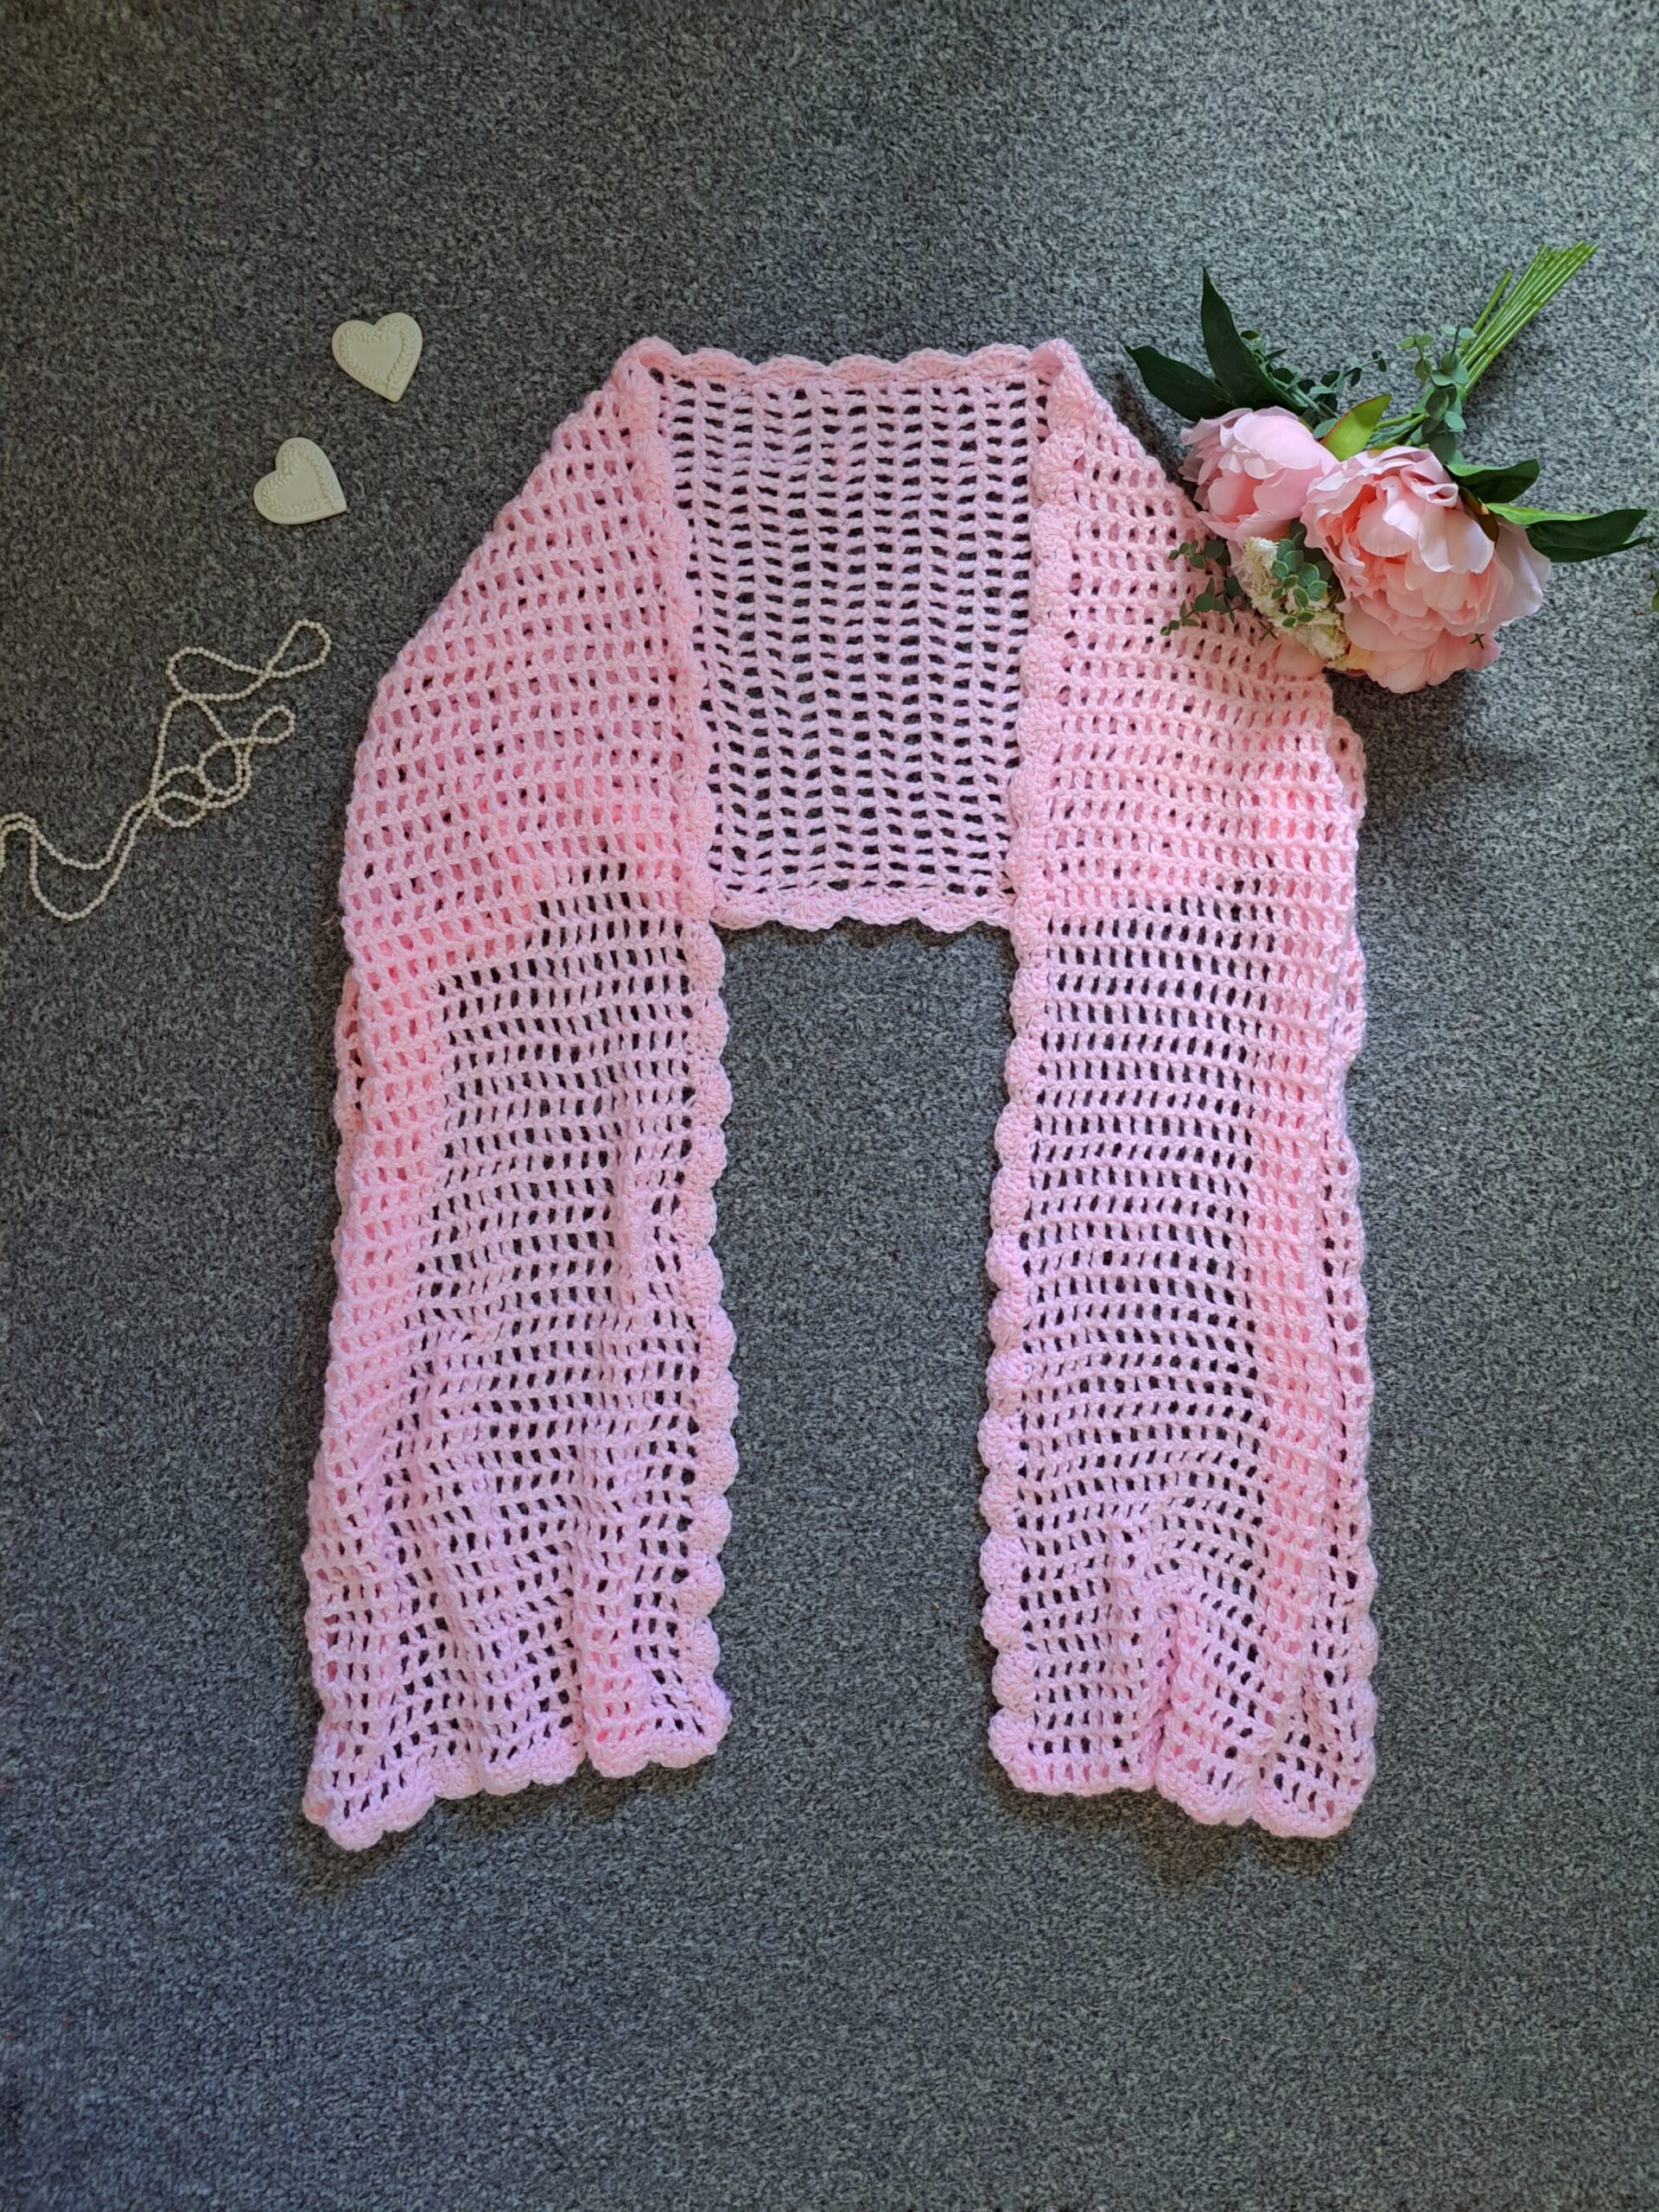 Crochet Edwardian Rose Wrap Free Pattern